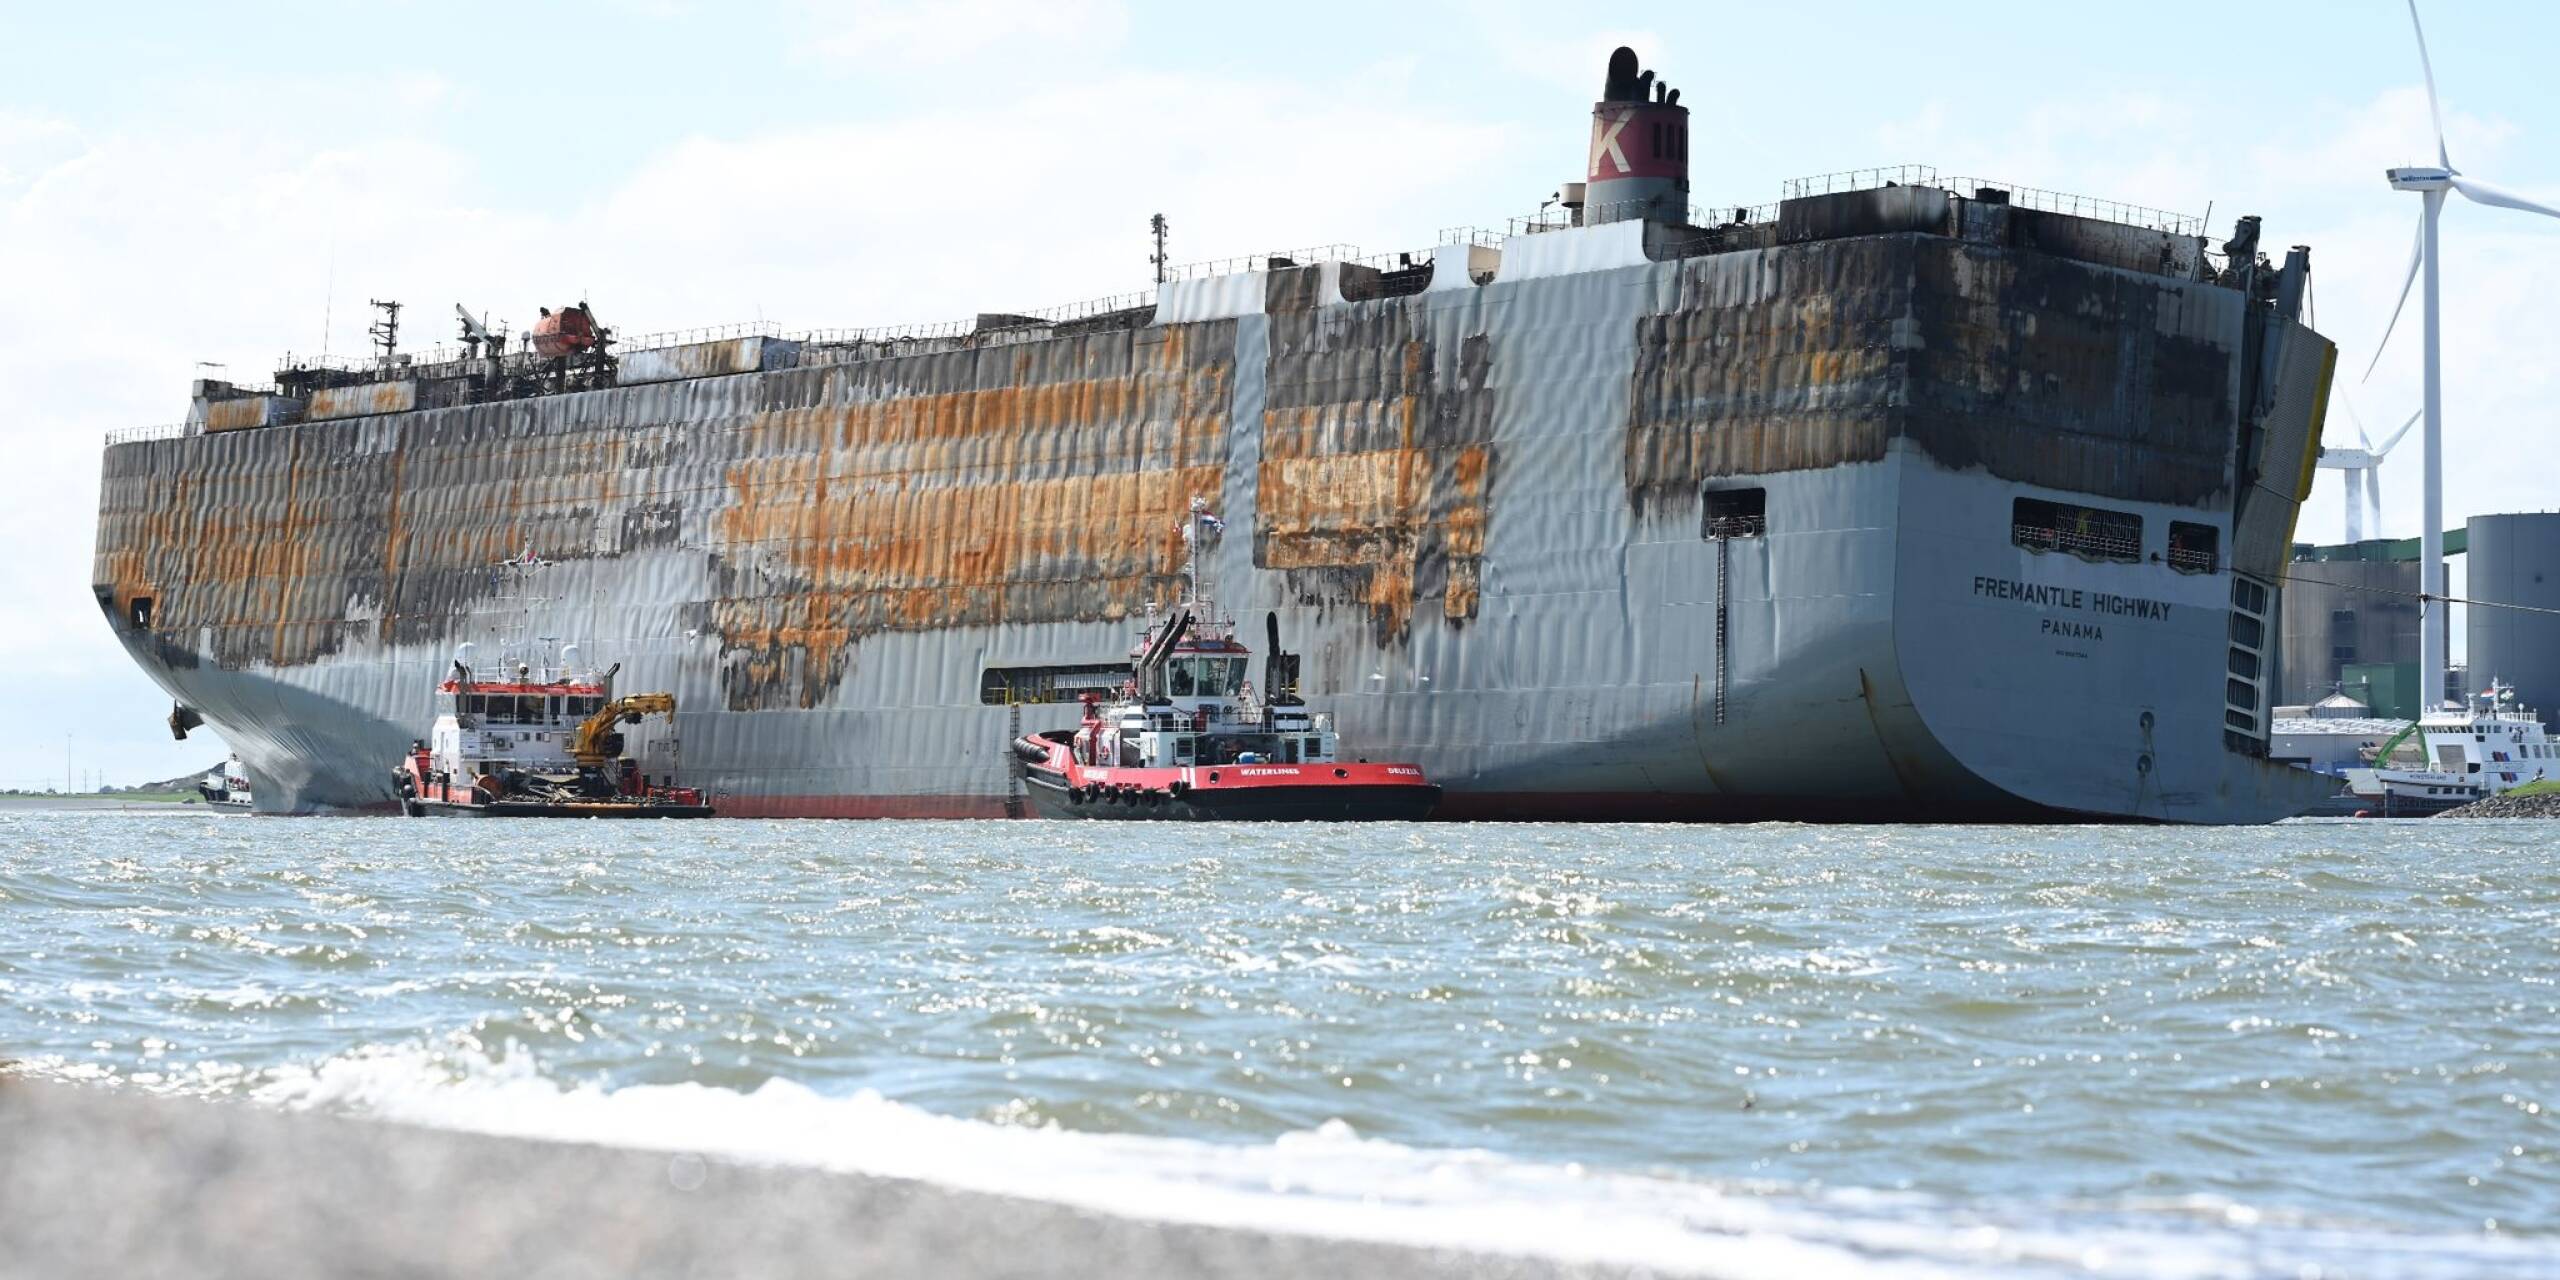 Gut eine Woche war das Schicksal des Frachters «Fremantle Highway», auf dem ein Feuer ausgebrochen war, ungewiss. Nun konnte das 200 Meter lange Schiff sicher ins niederländische Eemshaven gebracht werden.